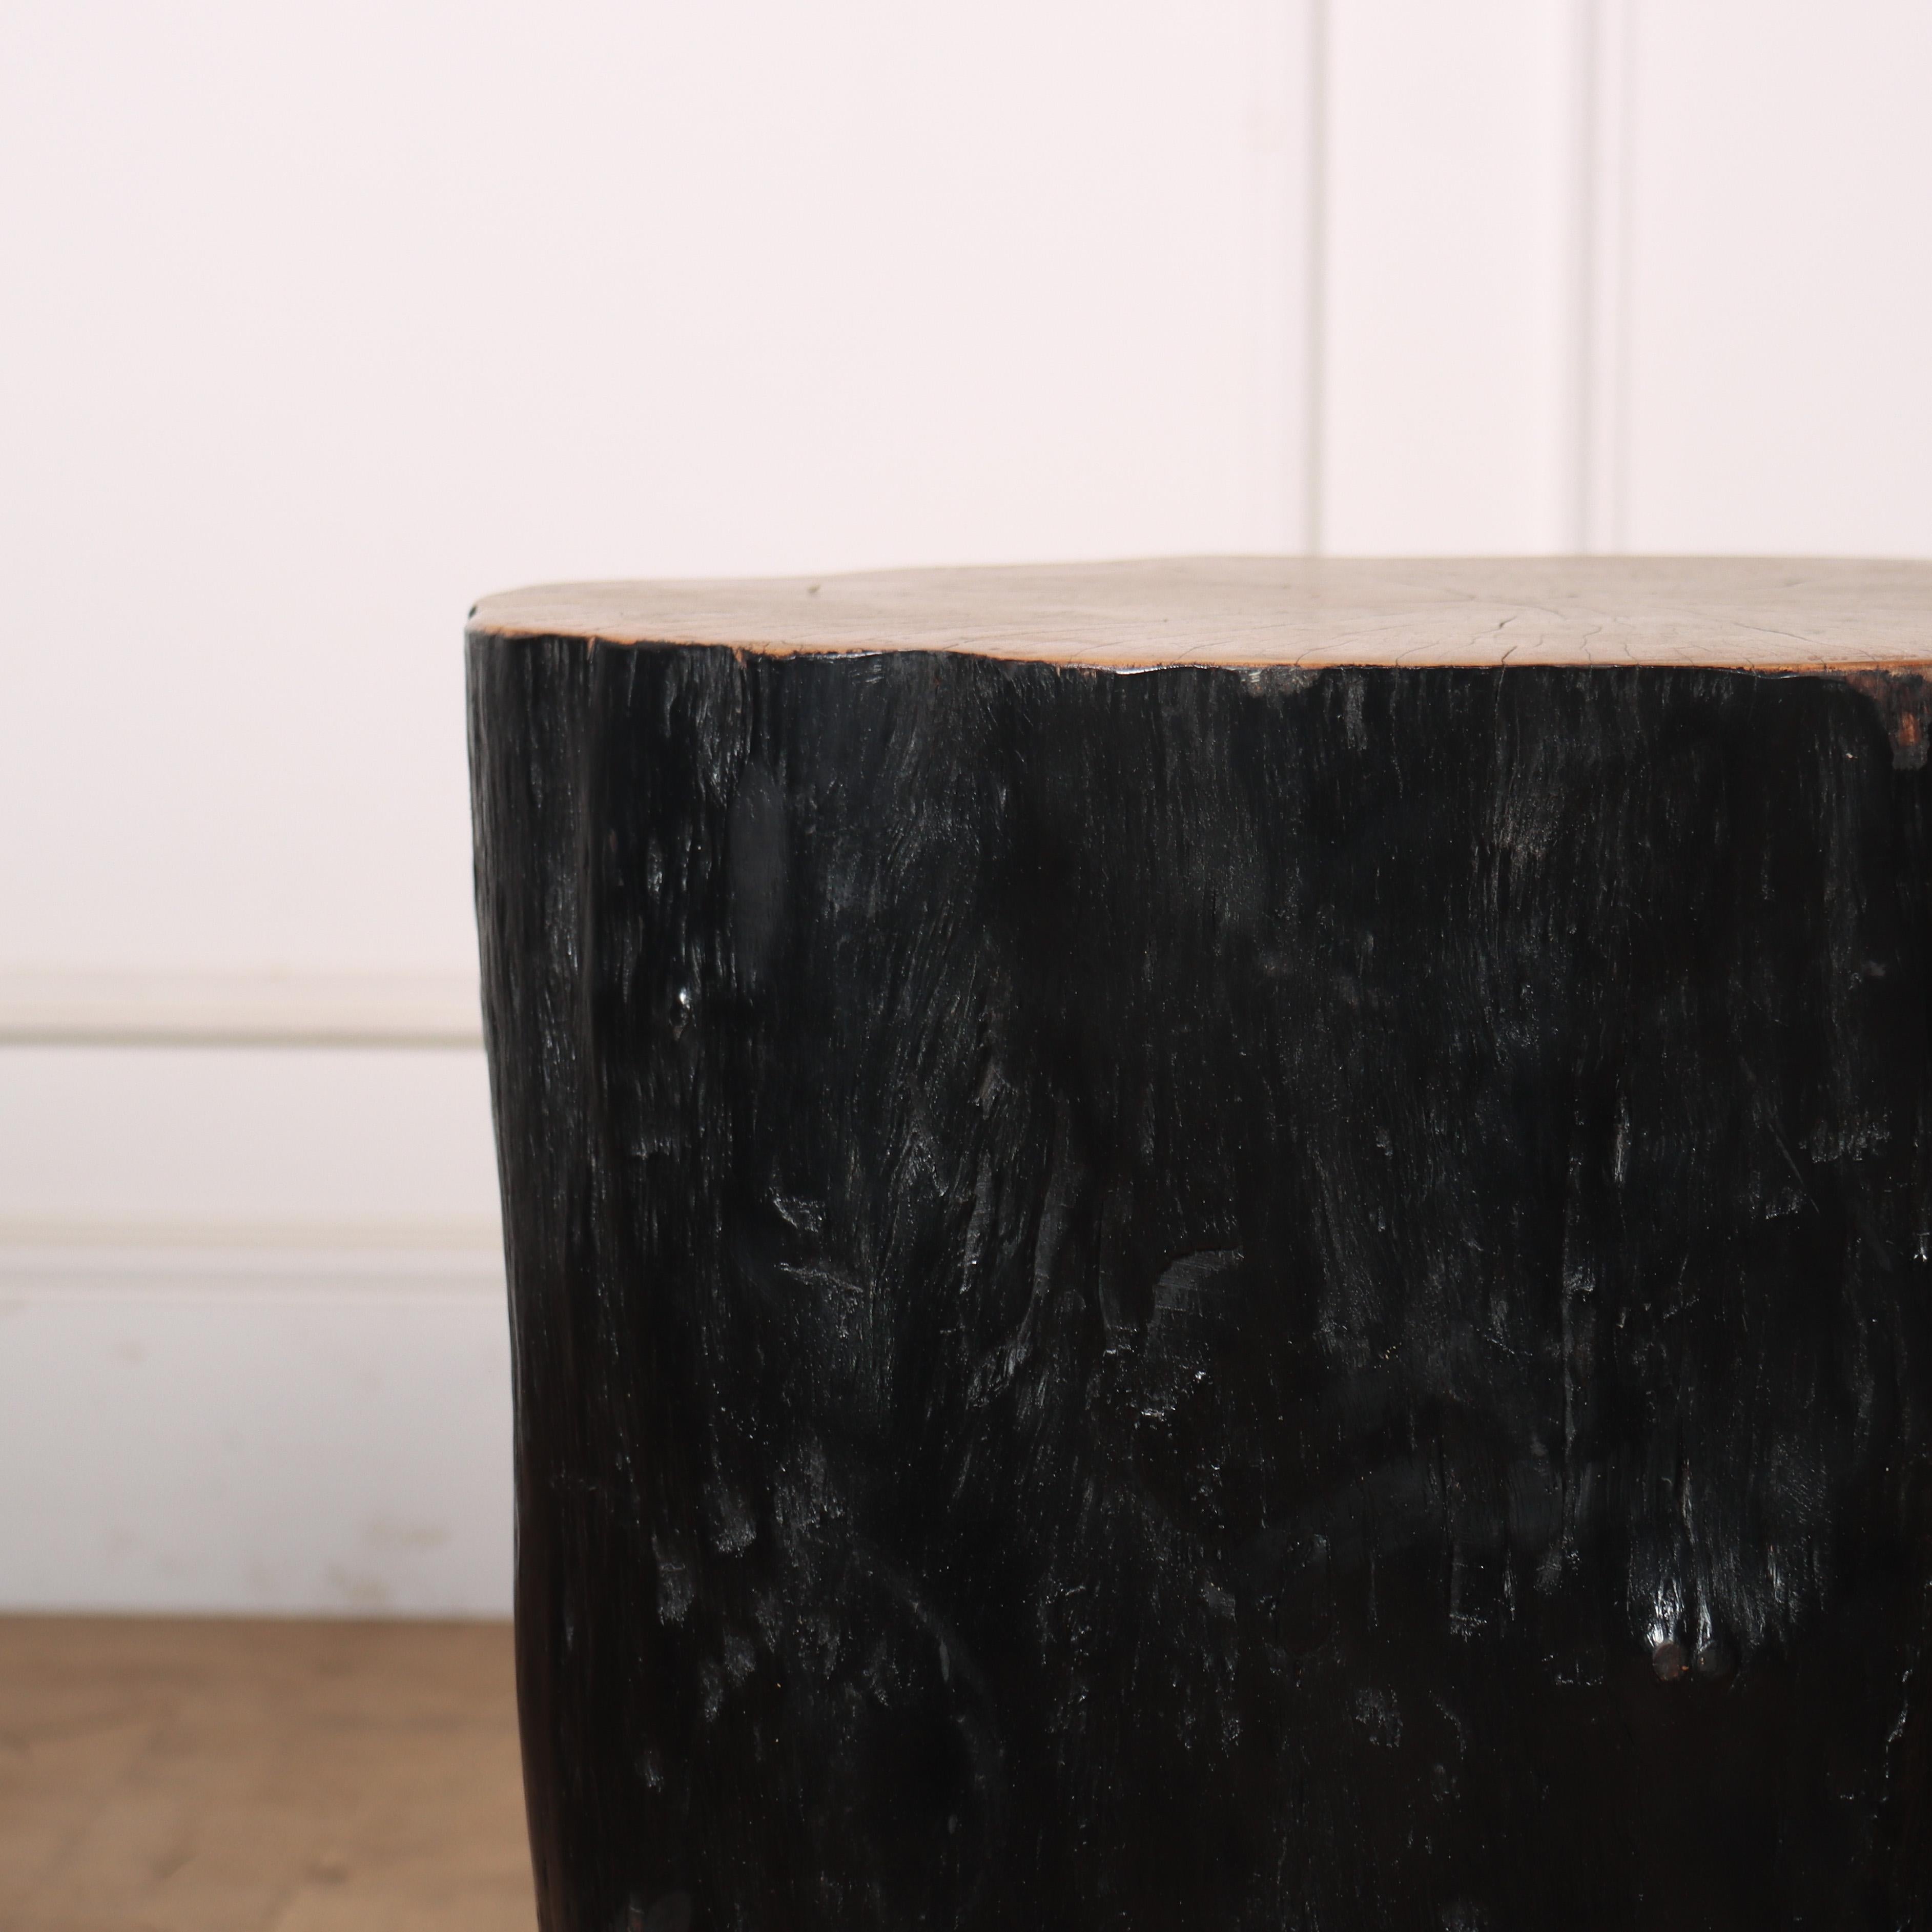 Table d'appoint primitive en litchi. Sculptée et finie à la main selon une technique japonaise appelée Shou-Sugi Ban.

Référence : 8155

Dimensions
41 cm de large
13,5 pouces (34 cm) de profondeur
19,5 pouces (50 cm) de haut